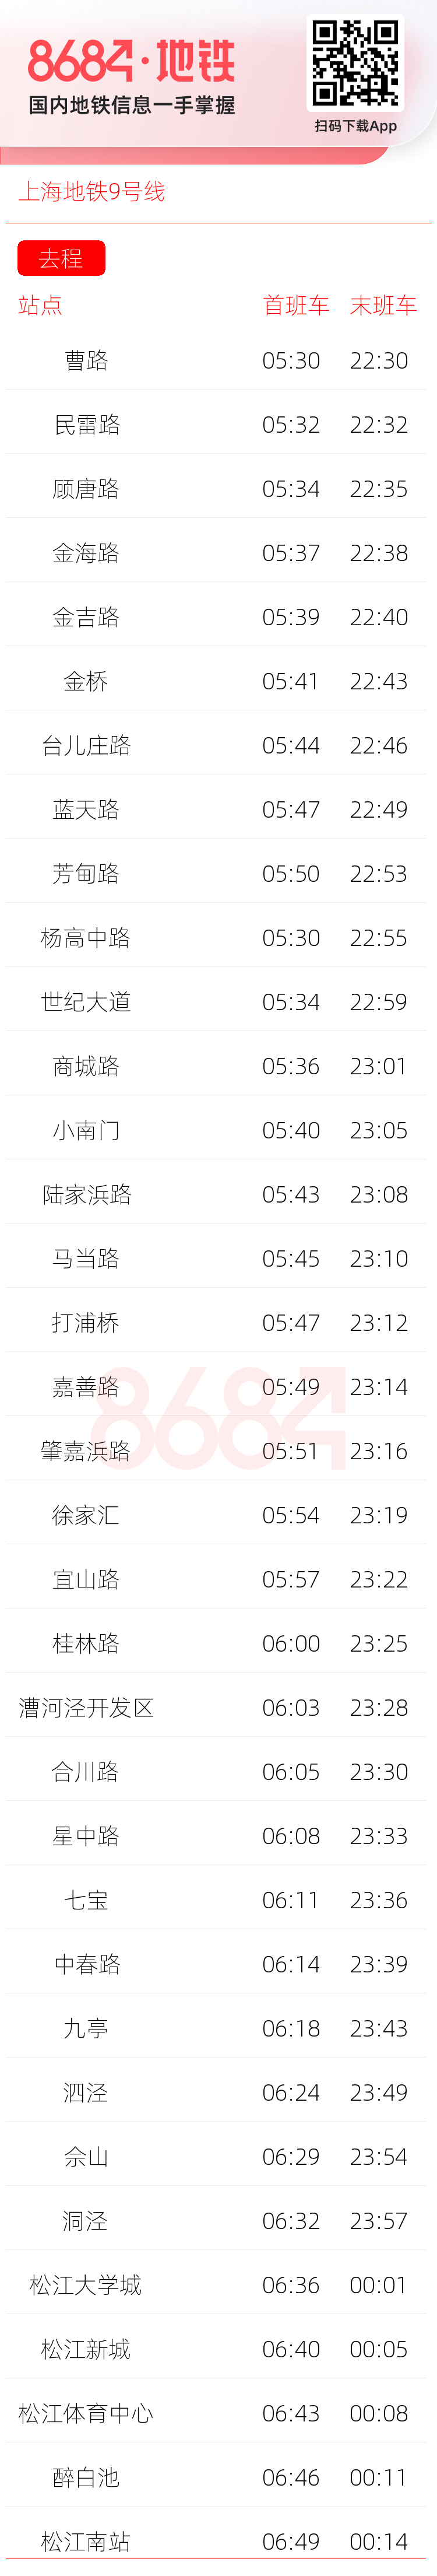 上海地铁9号线运营时间表